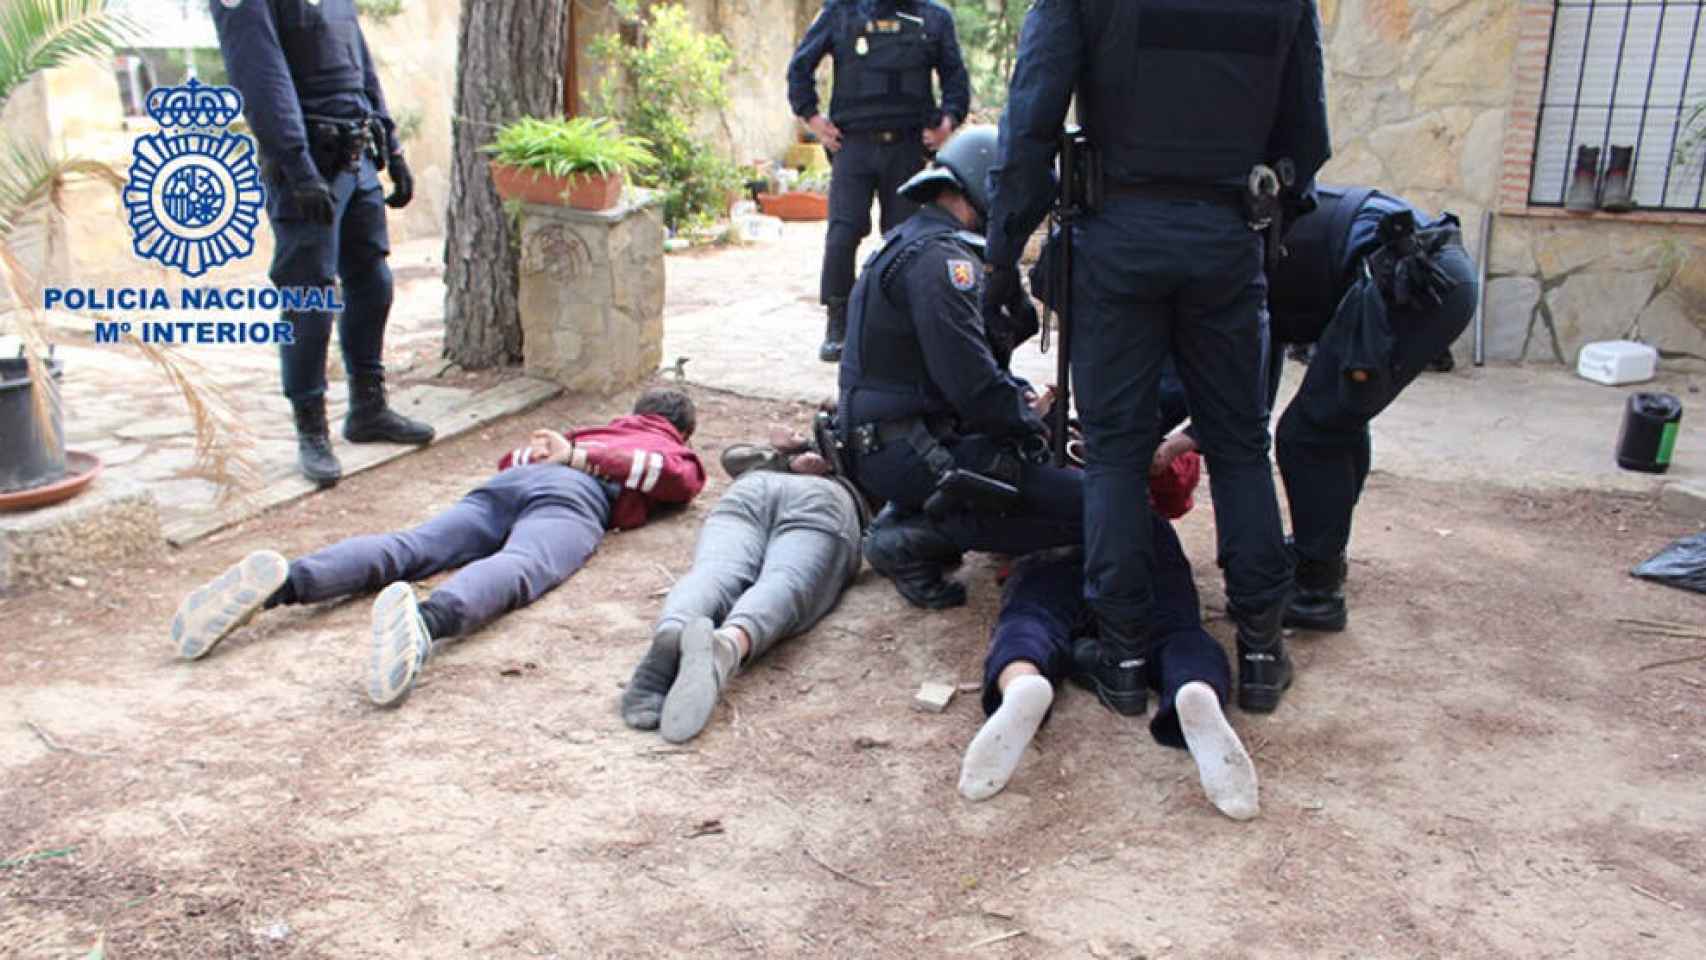 Los tres detenidos, en el suelo y custodiados por la Policía Nacional